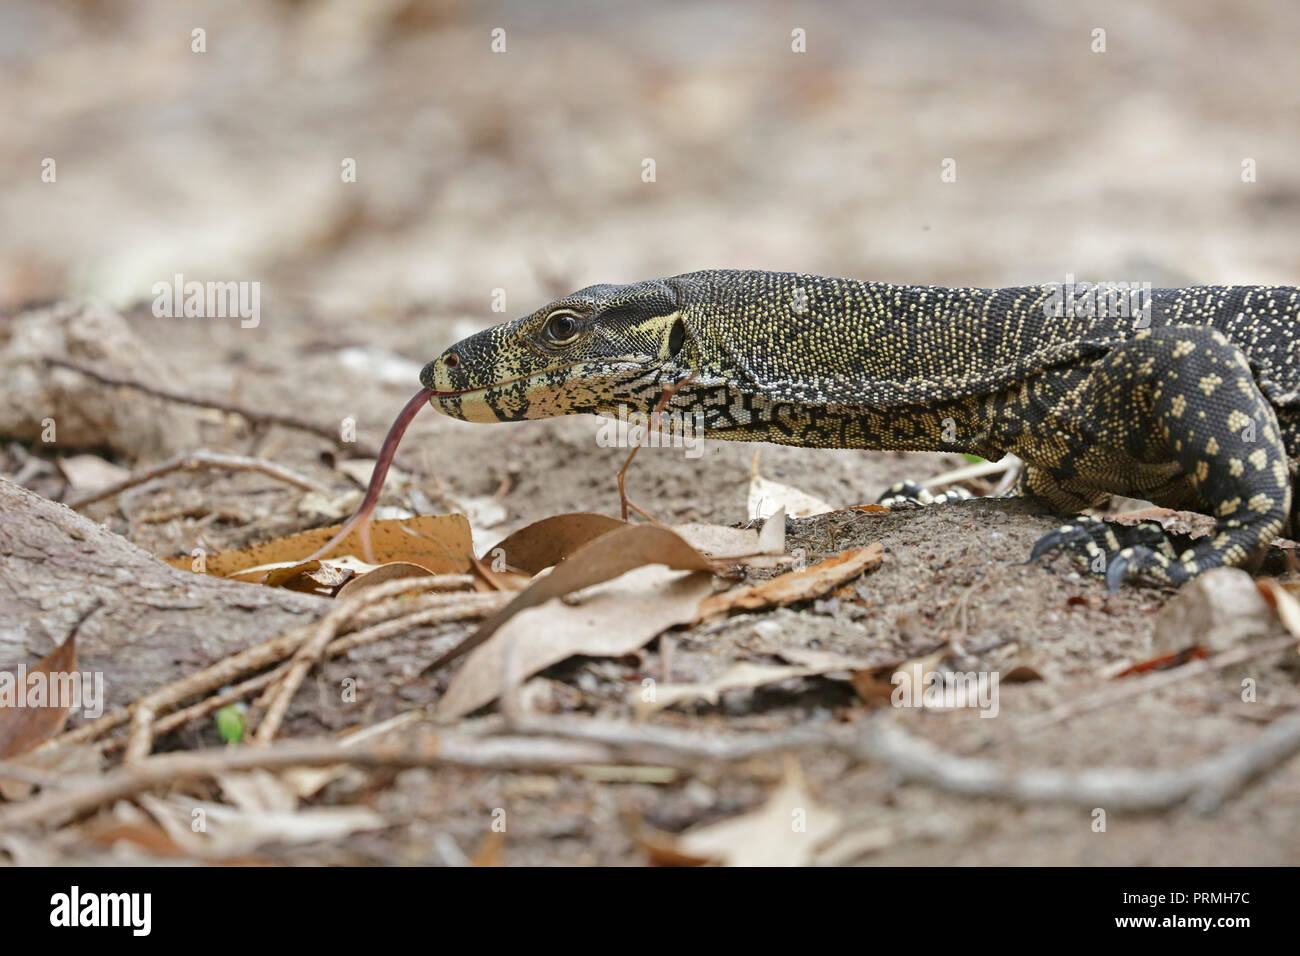 Goanna or Monitor Lizard in Far North Queensland Australia Stock Photo